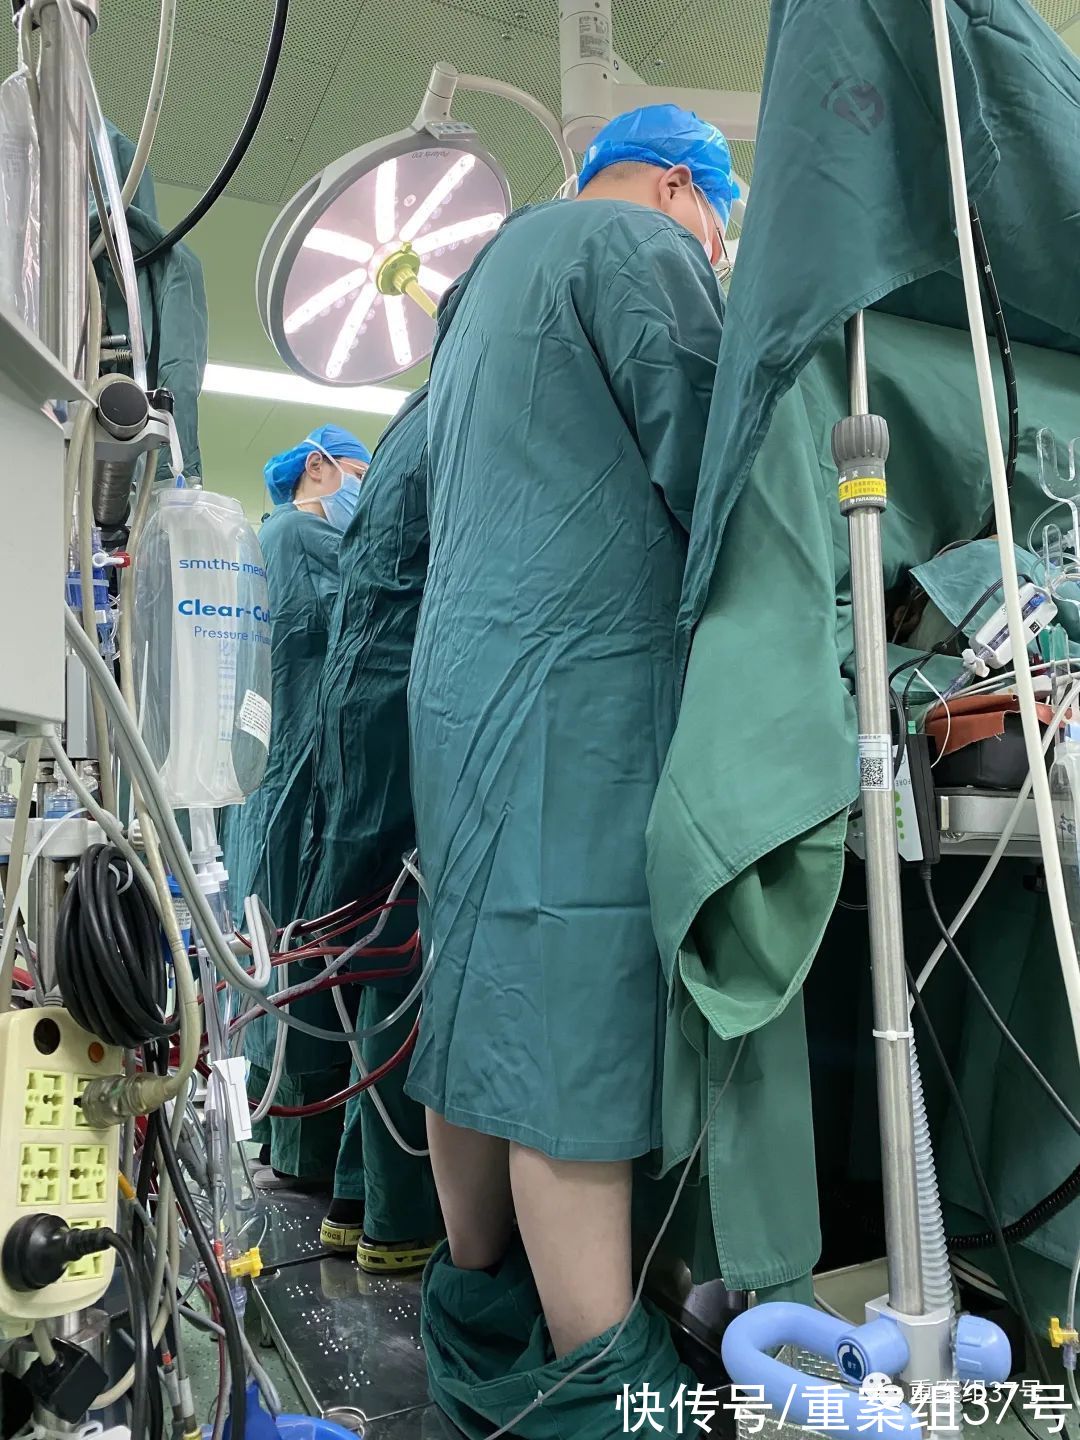 叶敬霆|手术中裤子掉了却顾不上提的外科医生：把病人的命救活就挺开心